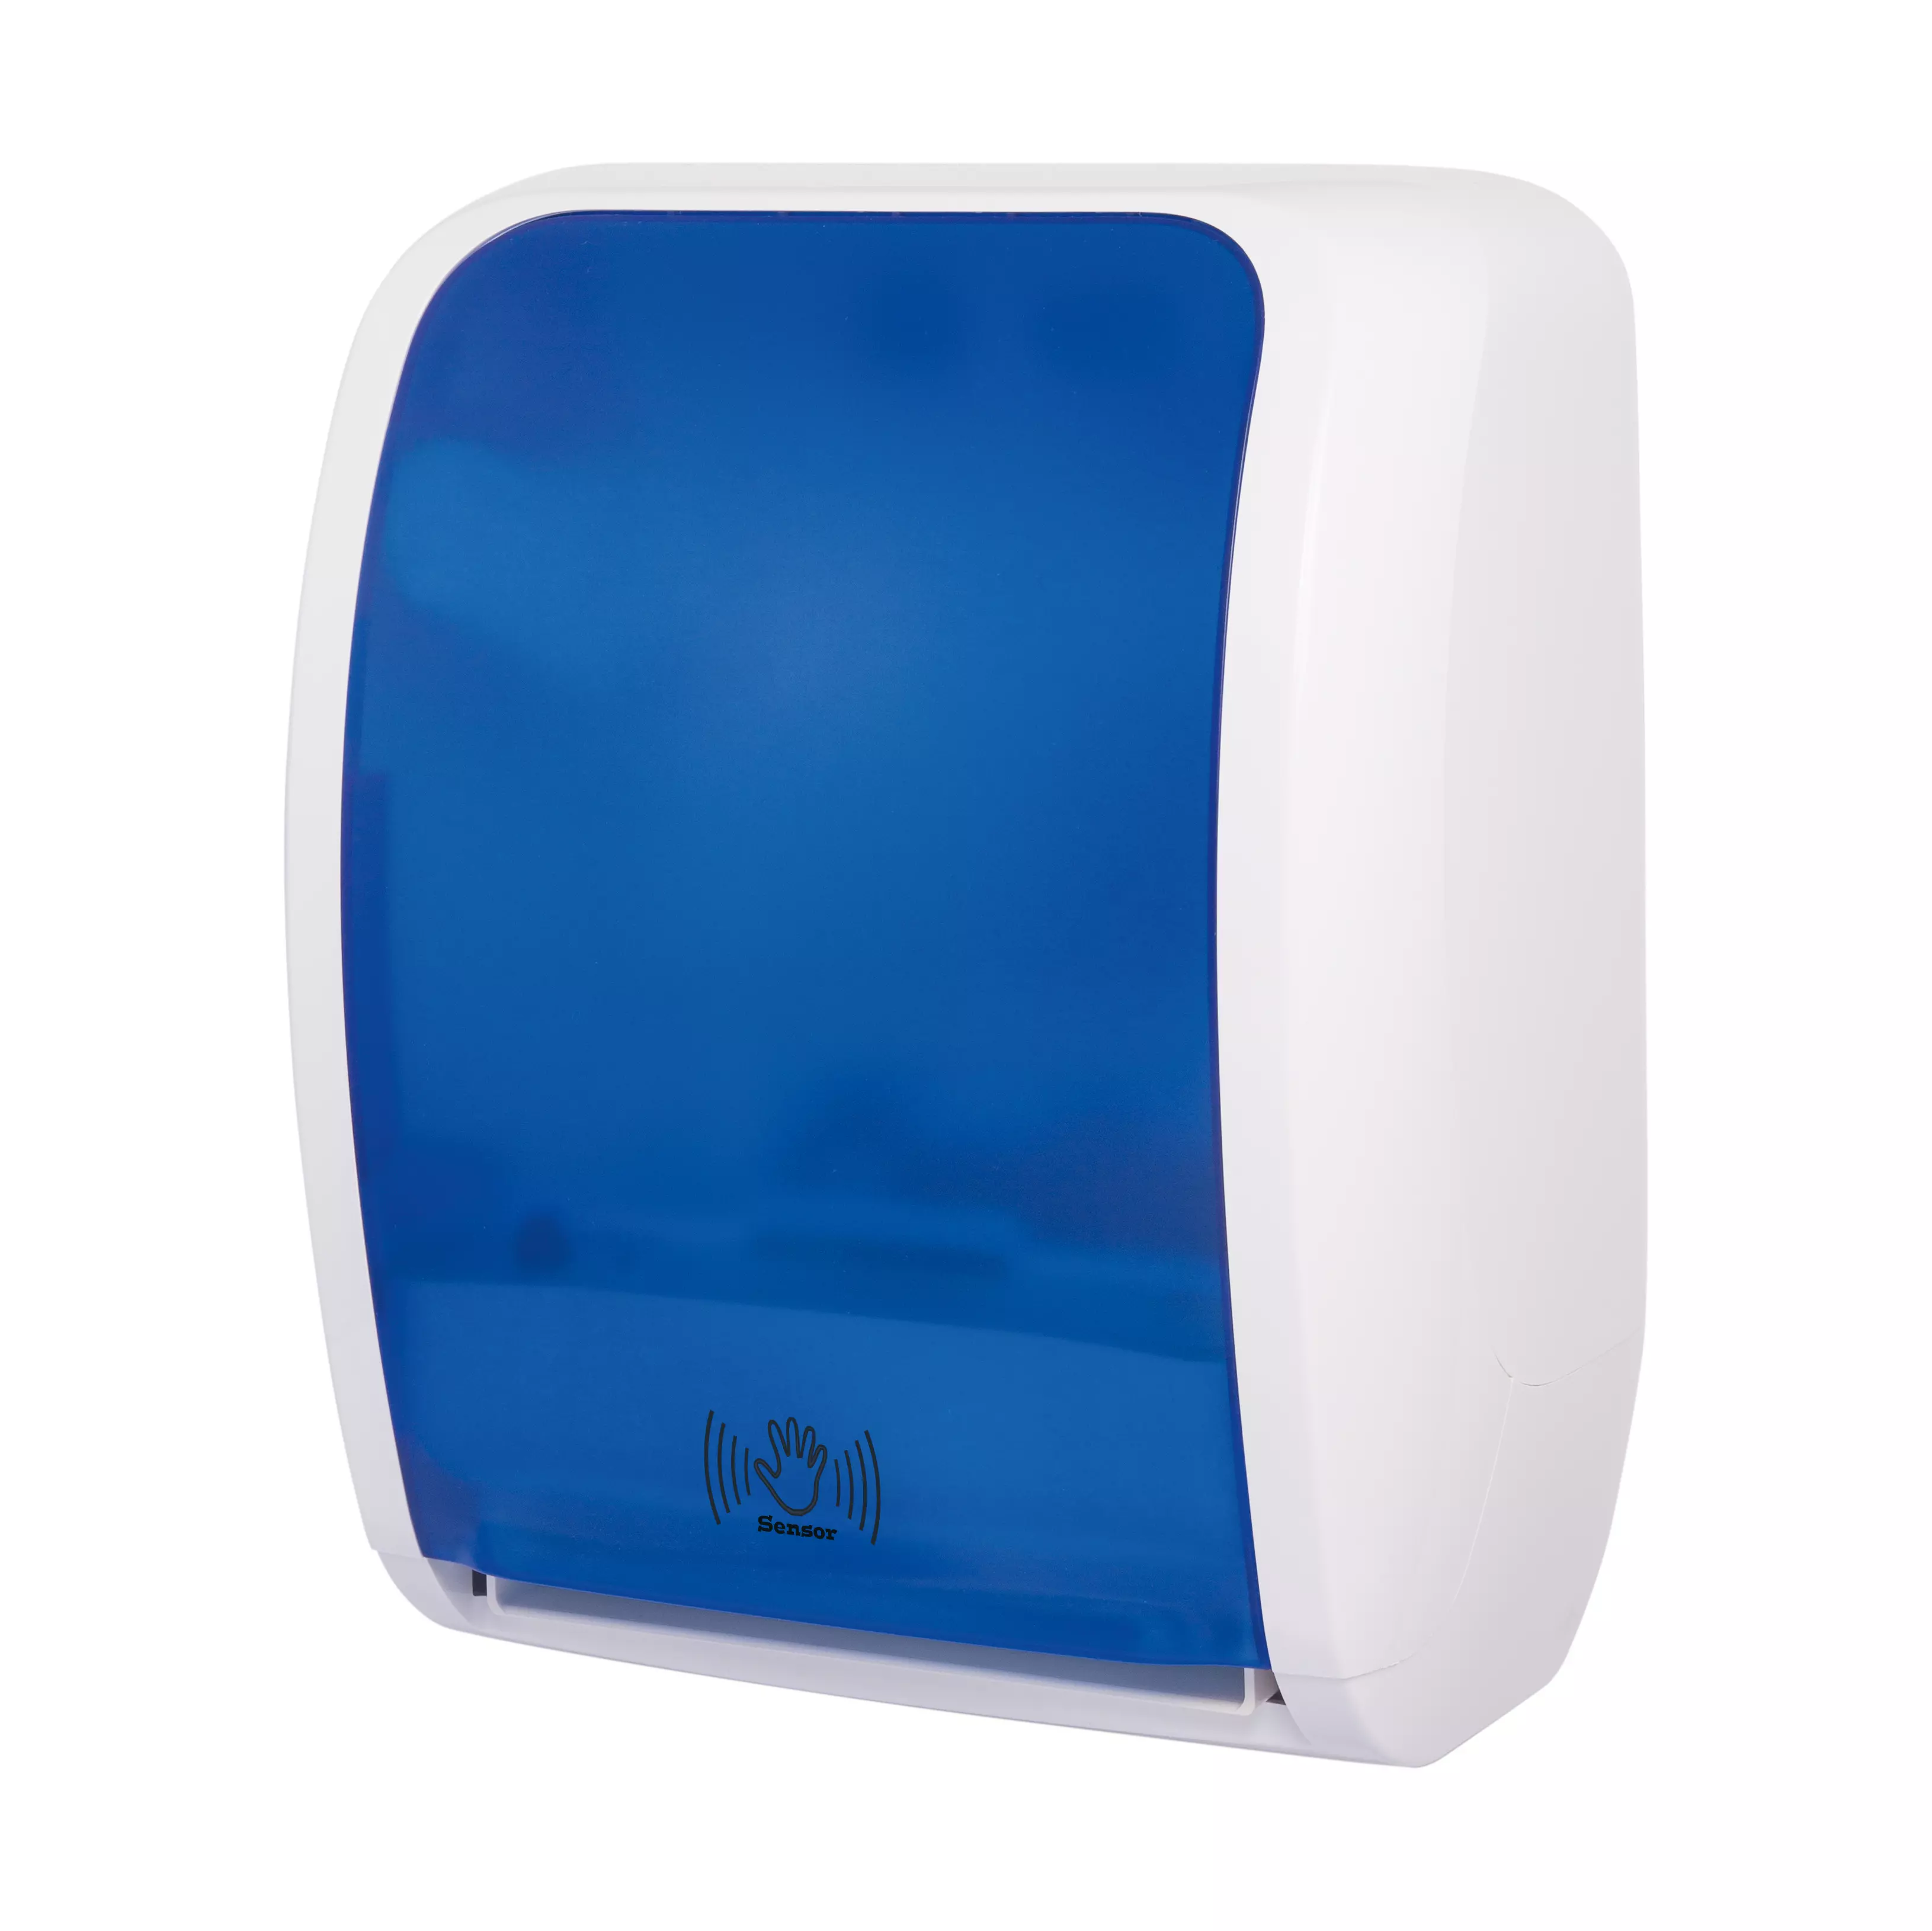 RATIO touchless towel dispenser - blue